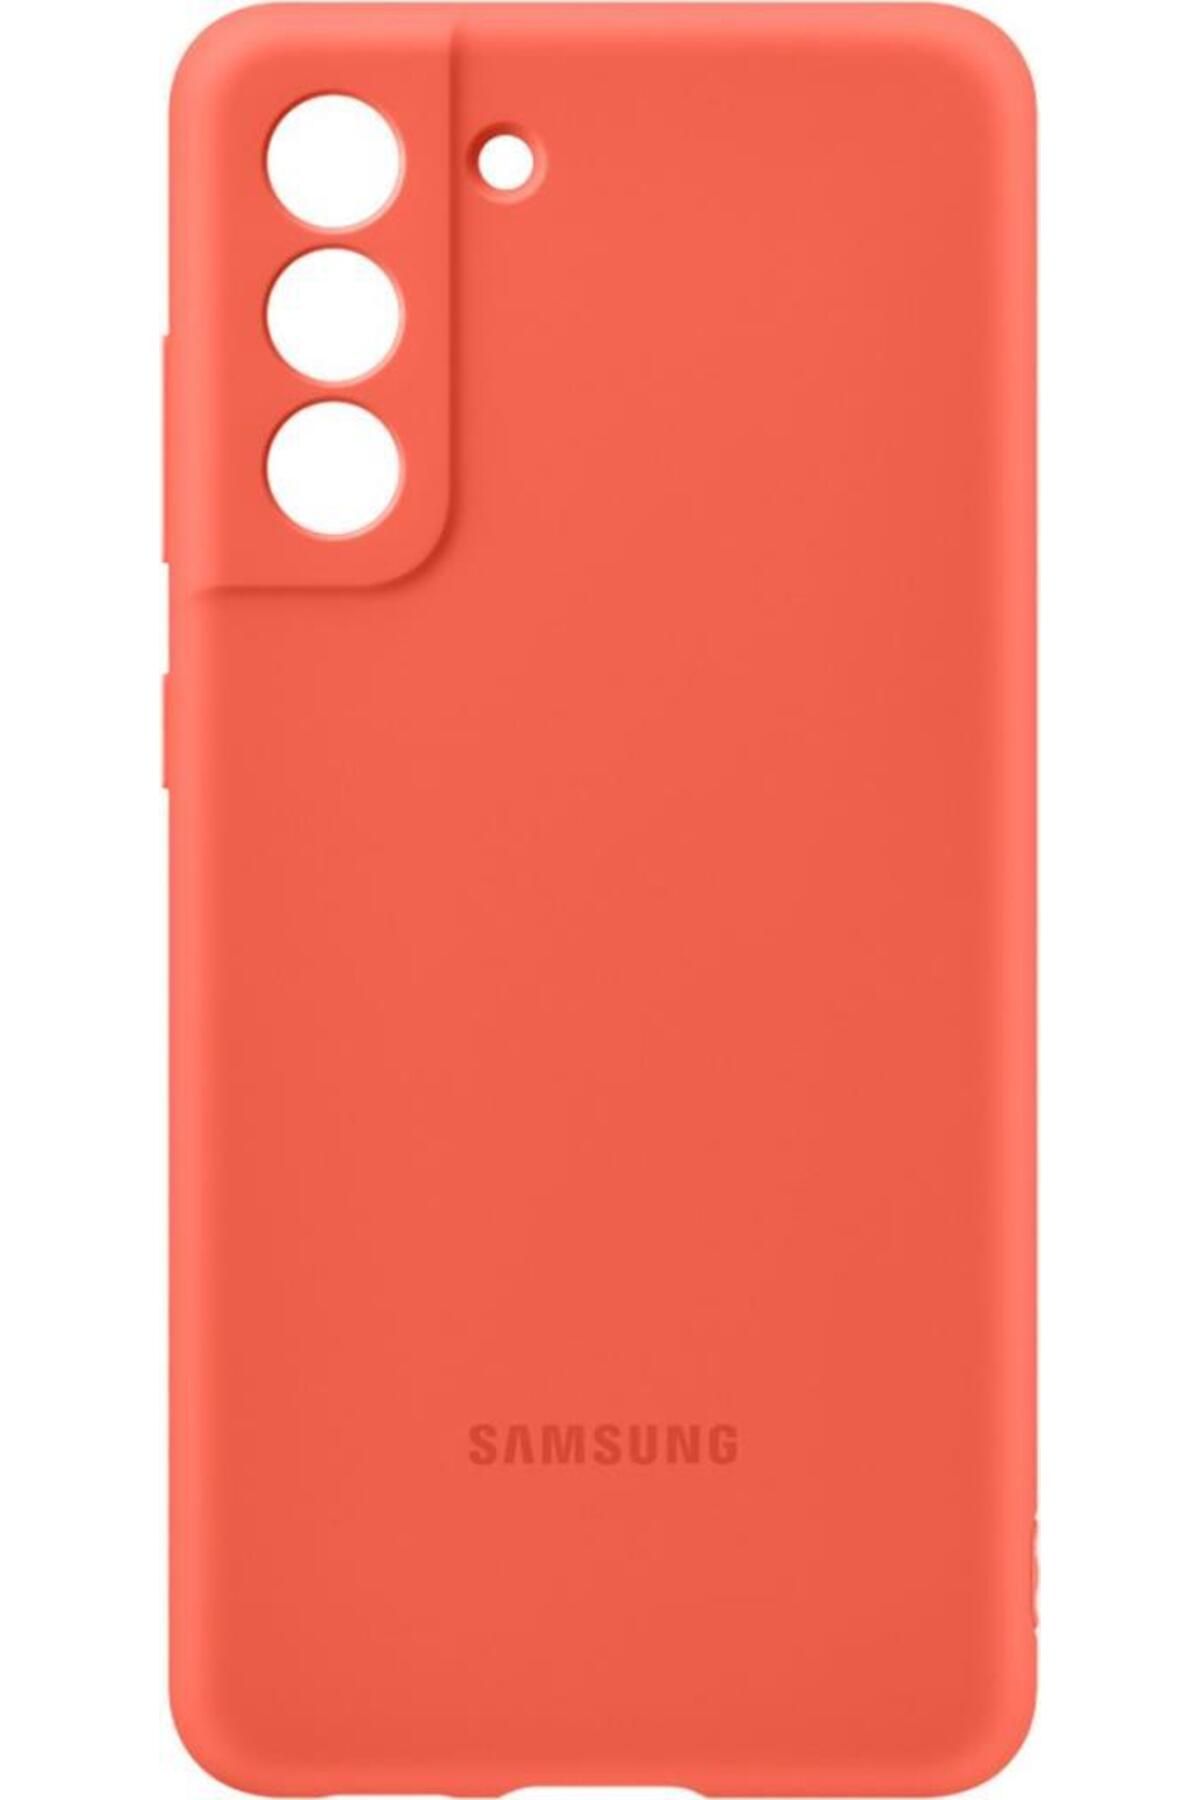 Samsung Galaxy S21 Fe Ile Uyumlu Silikon Kılıf Pembe Ef-pg990tpegww